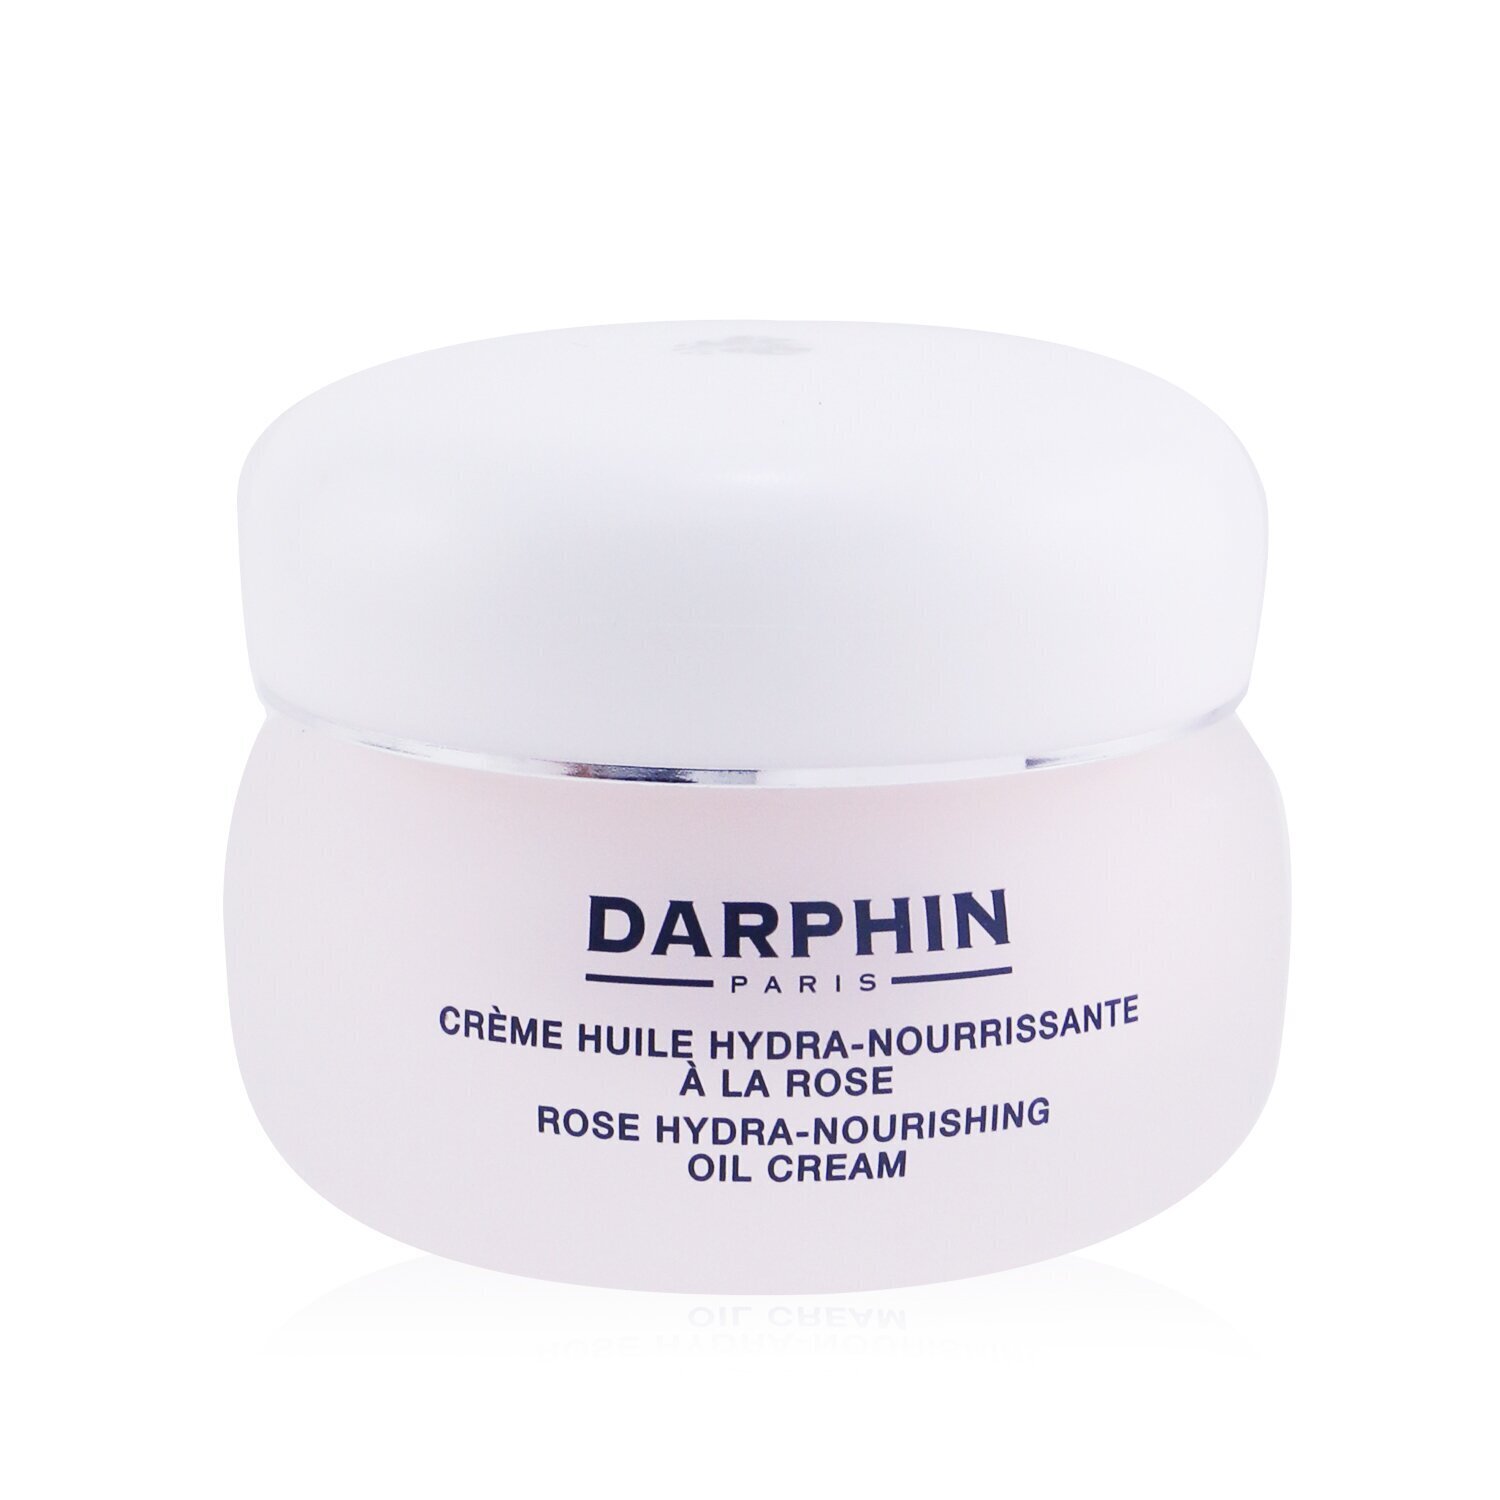 朵法 Darphin - 玫瑰修護精華油面霜 - 乾燥皮膚 50ml